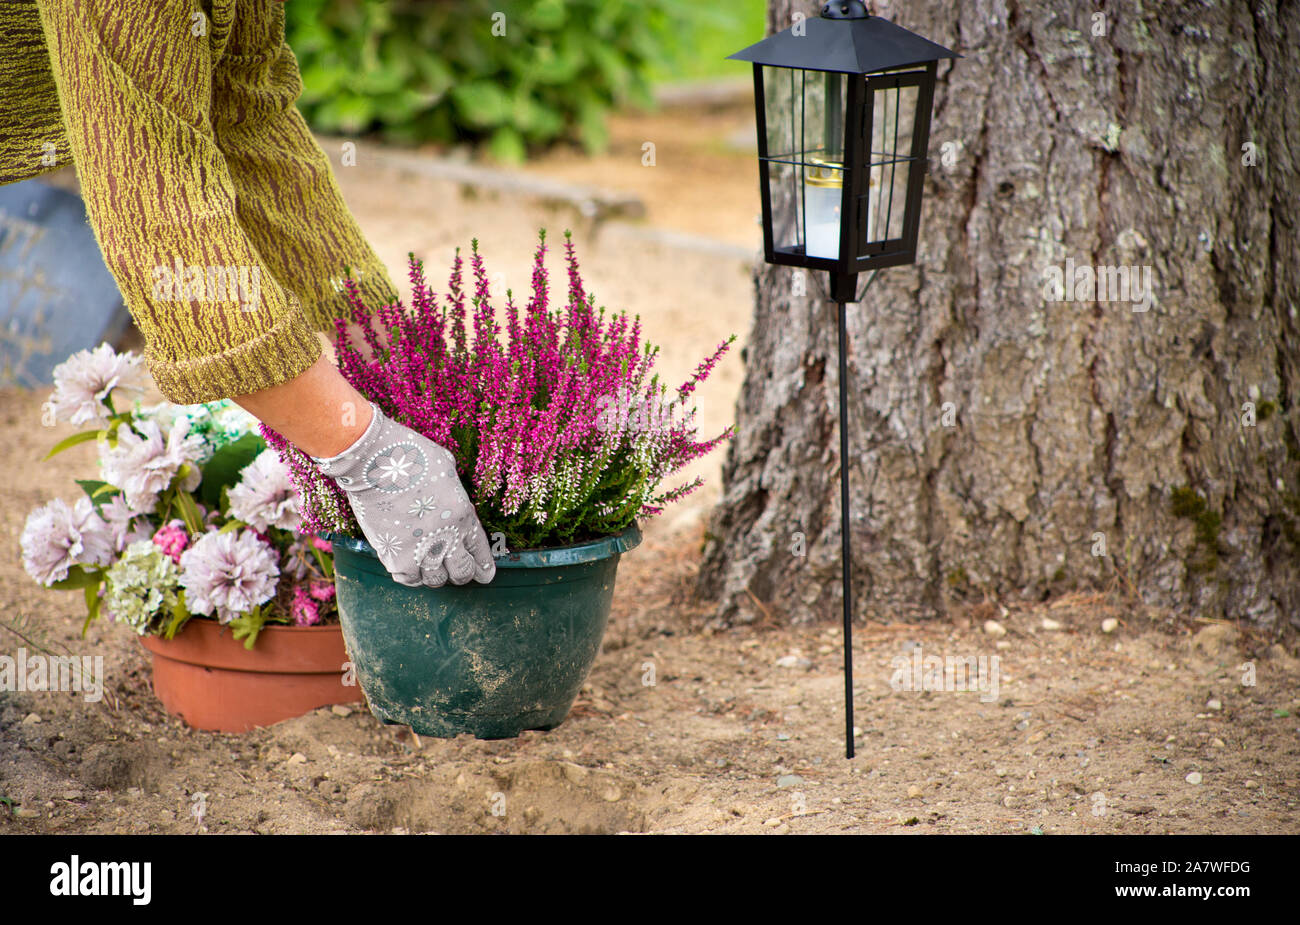 Frau Reinigung lieben Grab Grundstück und Pflanzen neue gemeinsame Heather Blumen in einem Blumentopf, Wartung von einem Grundstück in einem Kirchhof Konzept. Stockfoto